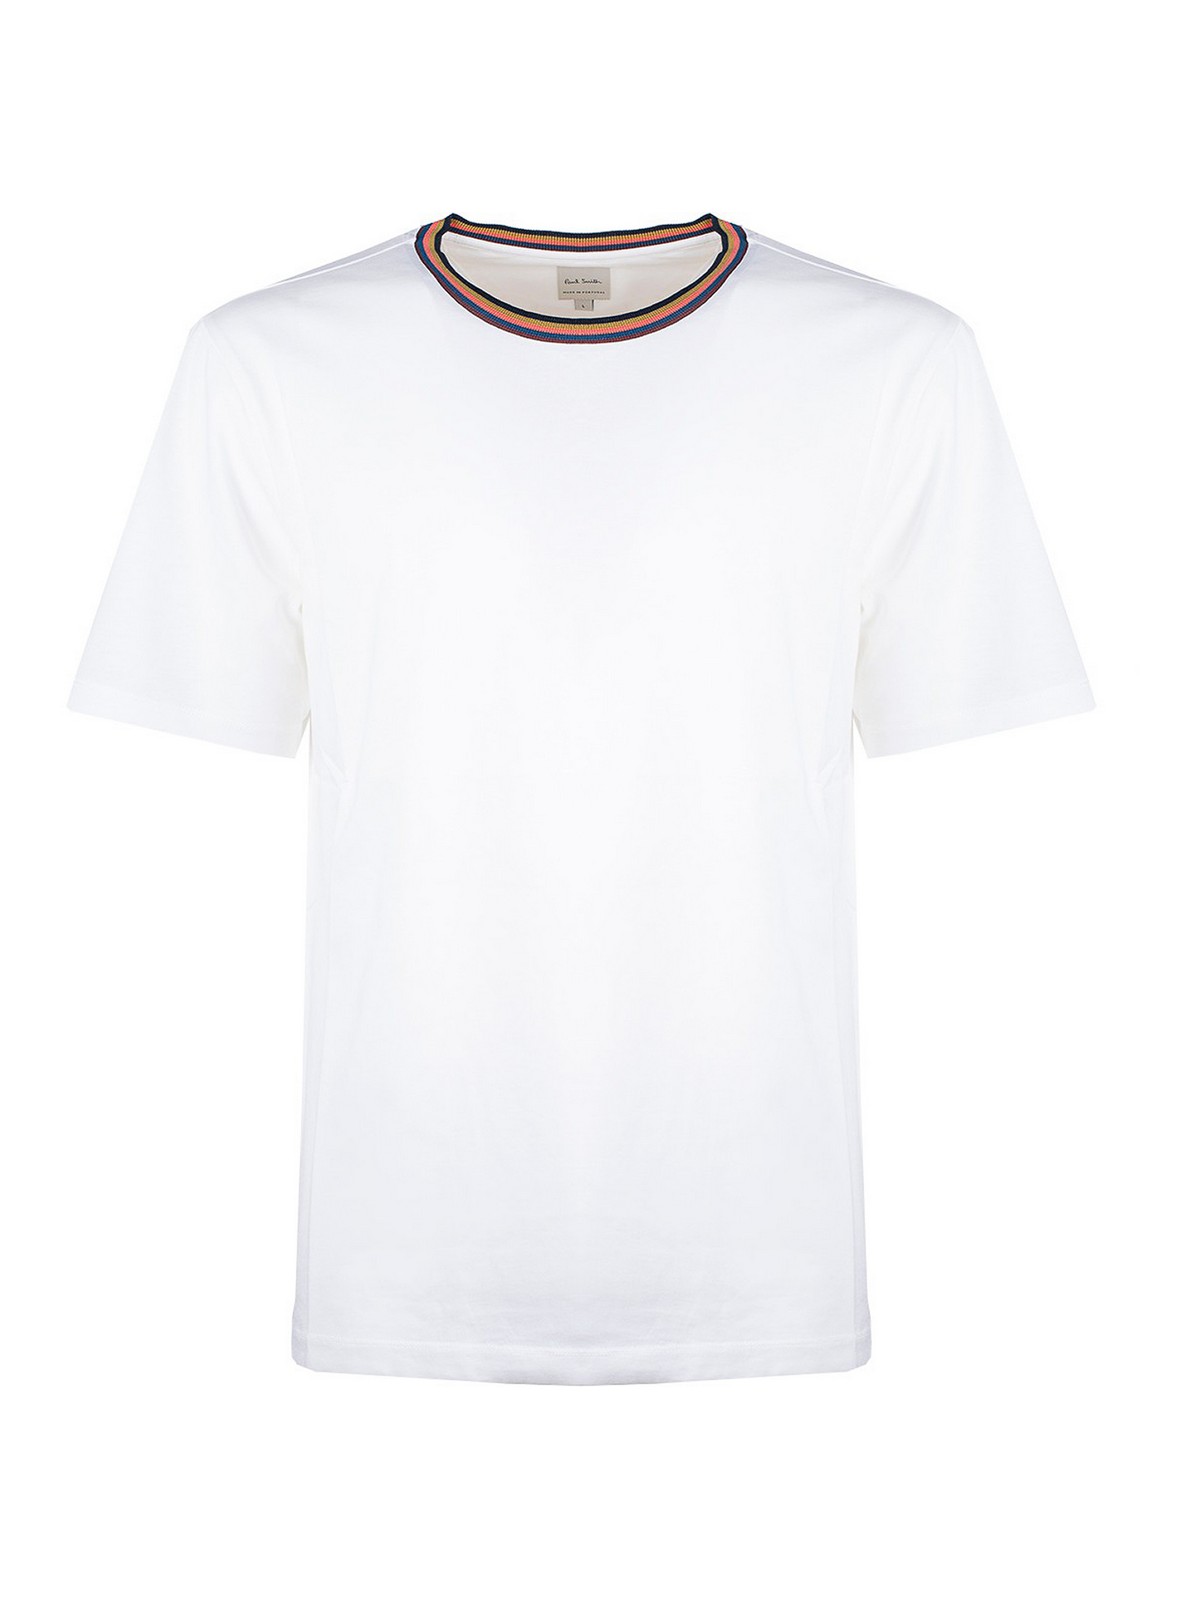 Paul Smith Artist Stripe Webbing T-shirt In White